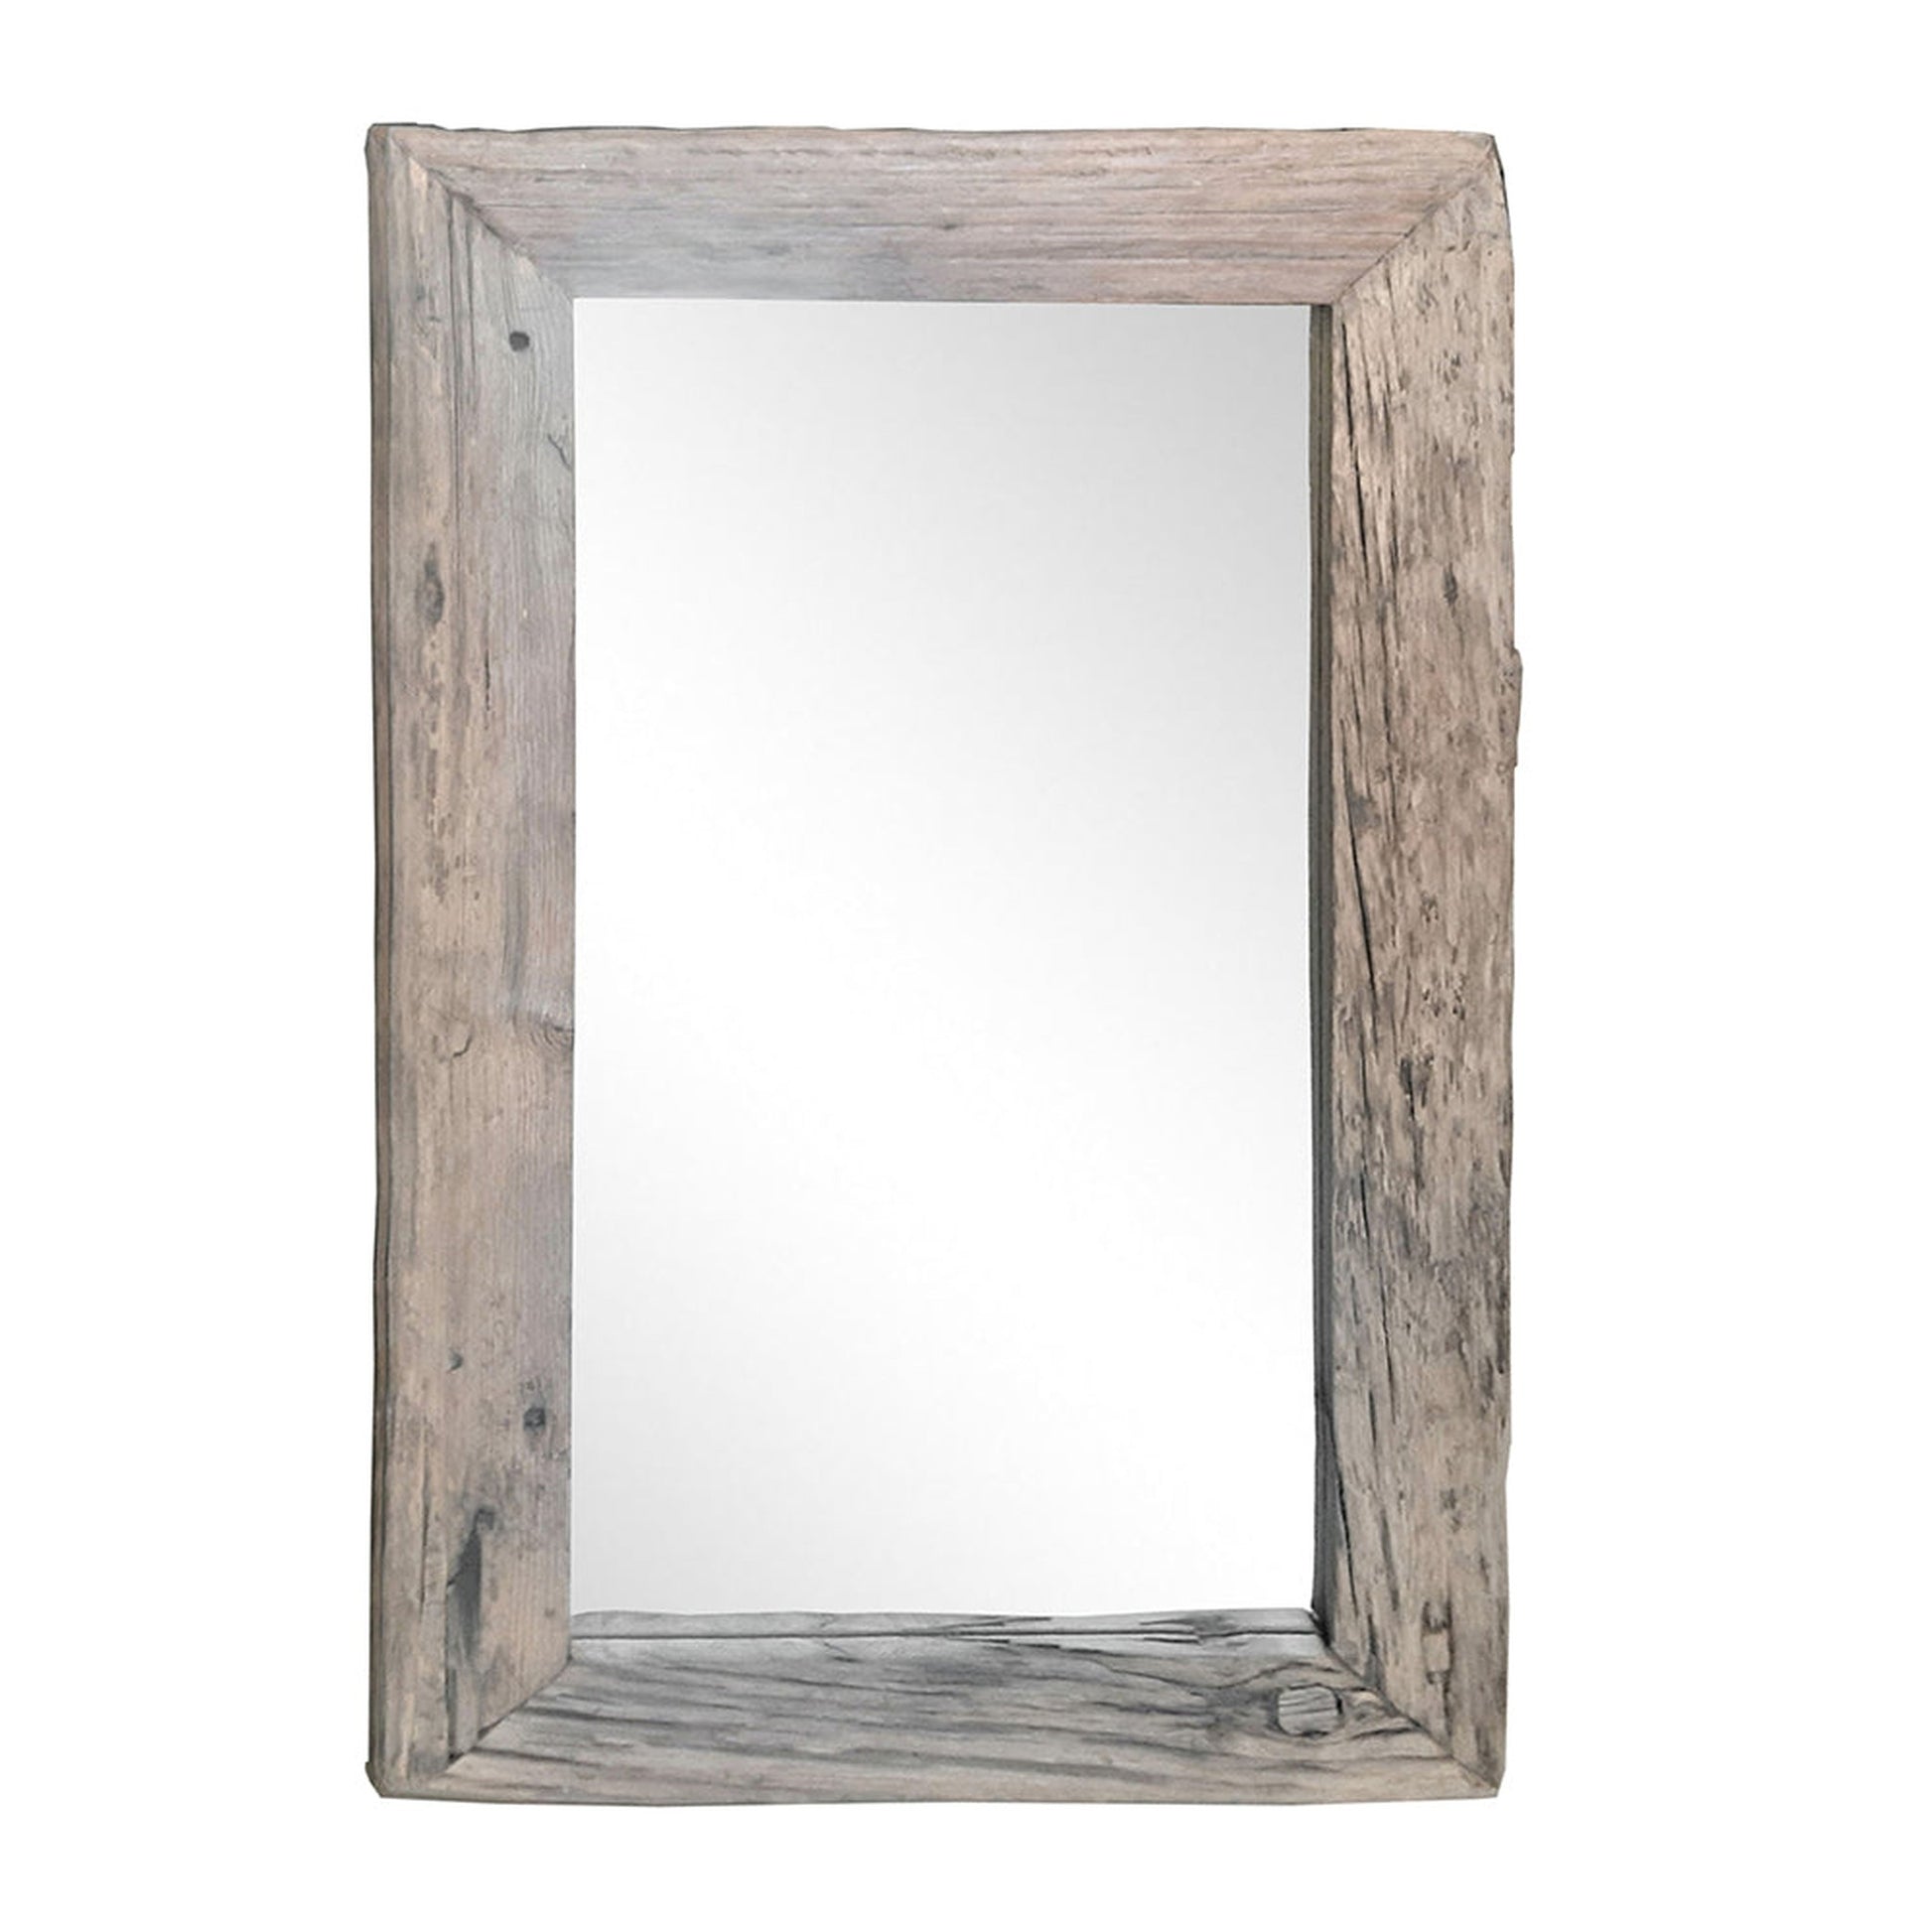 A&B Home 35" x 59" Rectangular Brown Slipper Wooden Framed Wall-Mounted Mirror